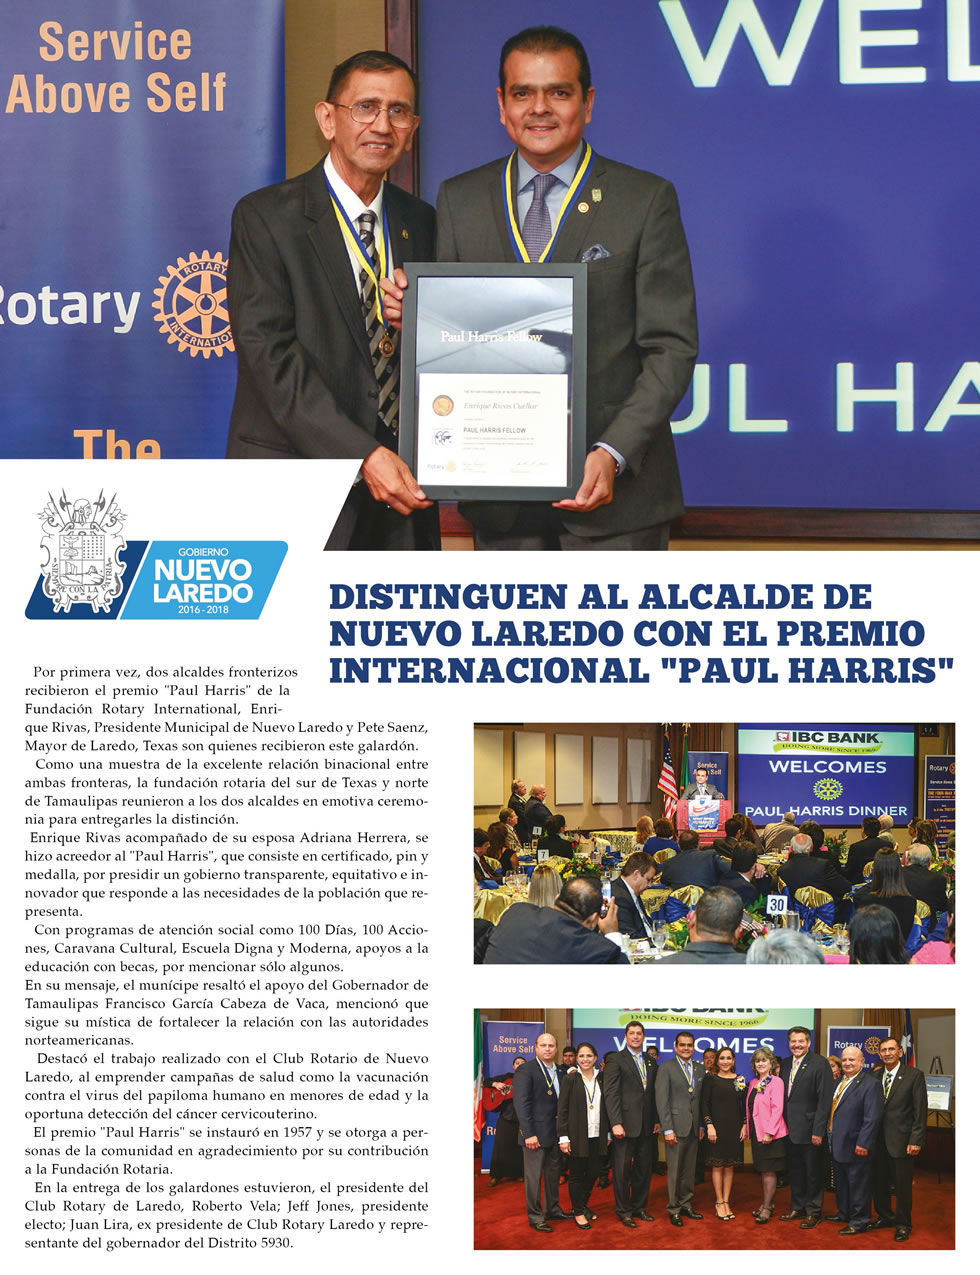 Distinguen al alcalde de Nuevo Laredo con el Premio Internacional “Paul Harris”